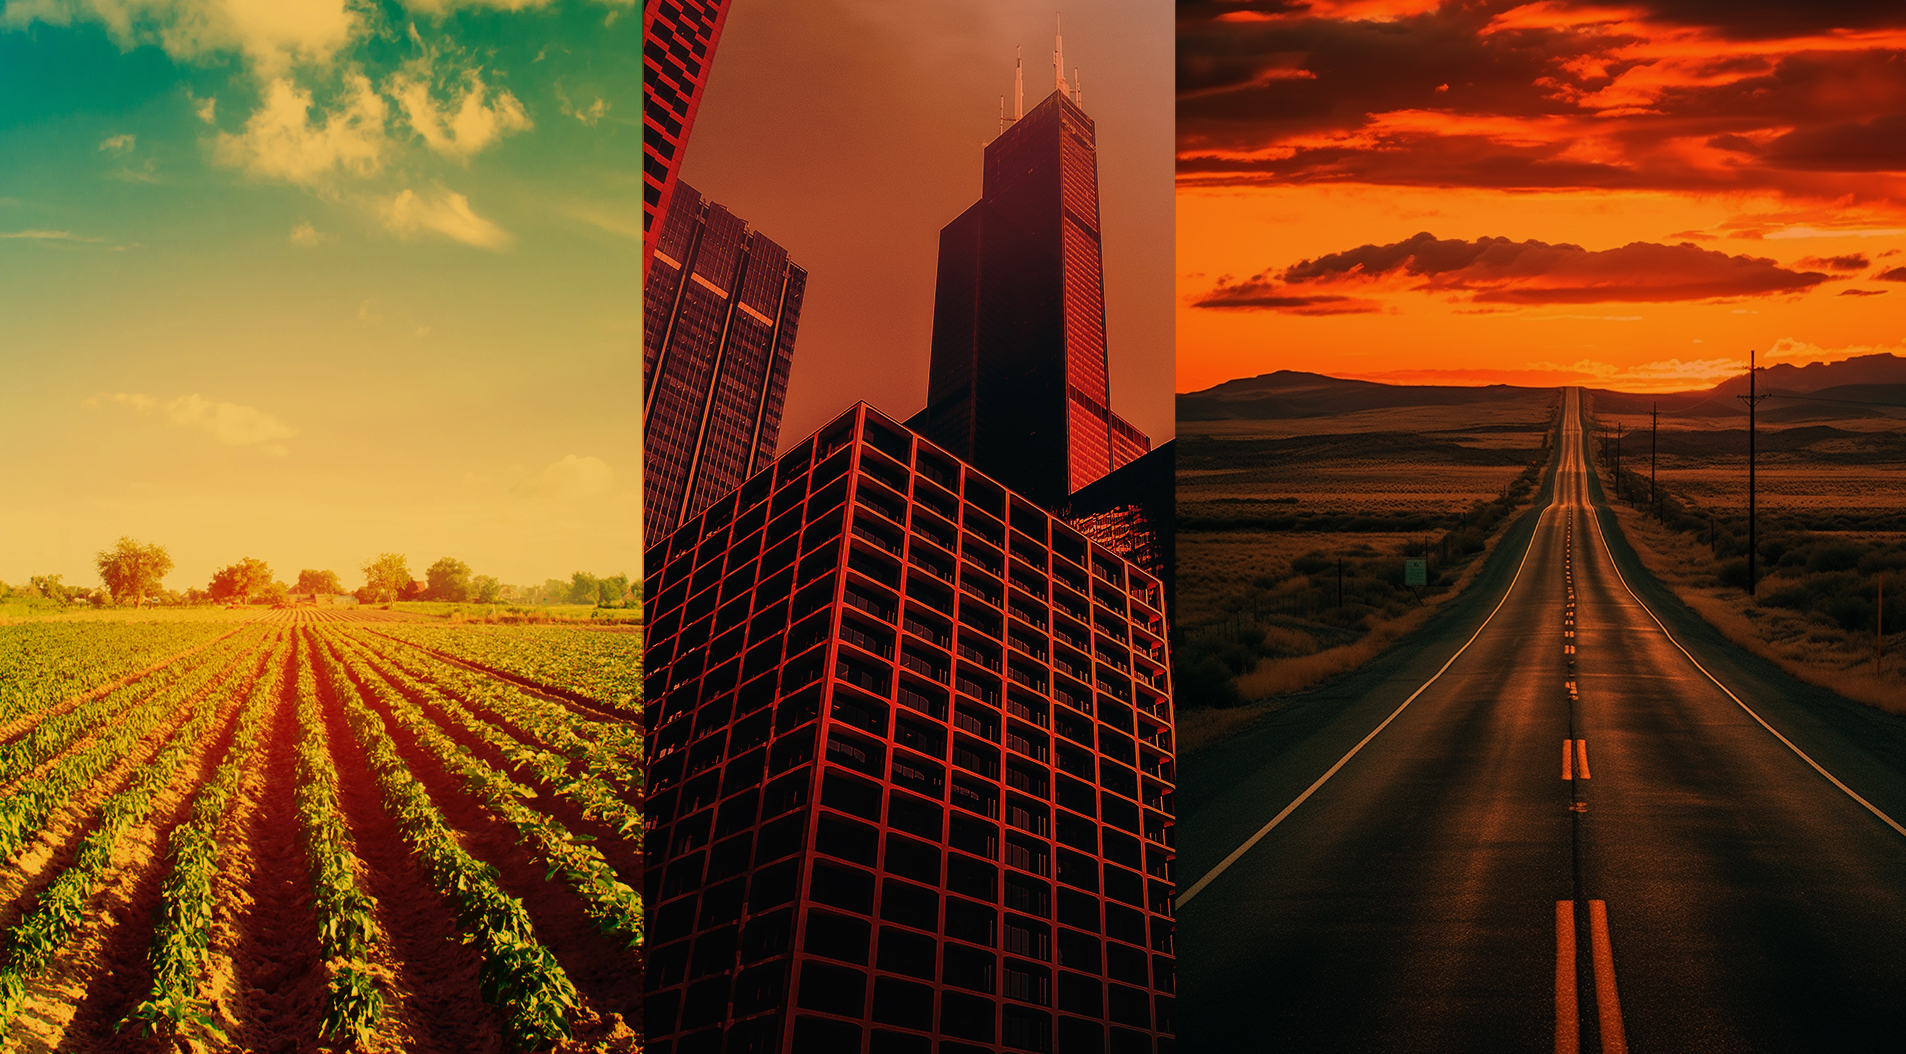 Montagem de três imagens: à esquerda, um campo agrícola sob céu azul com nuvens; ao centro, arranha-céus de vidro refletindo a luz do pôr do sol; à direita, uma longa estrada reta que se estende para o horizonte sob um céu crepuscular.